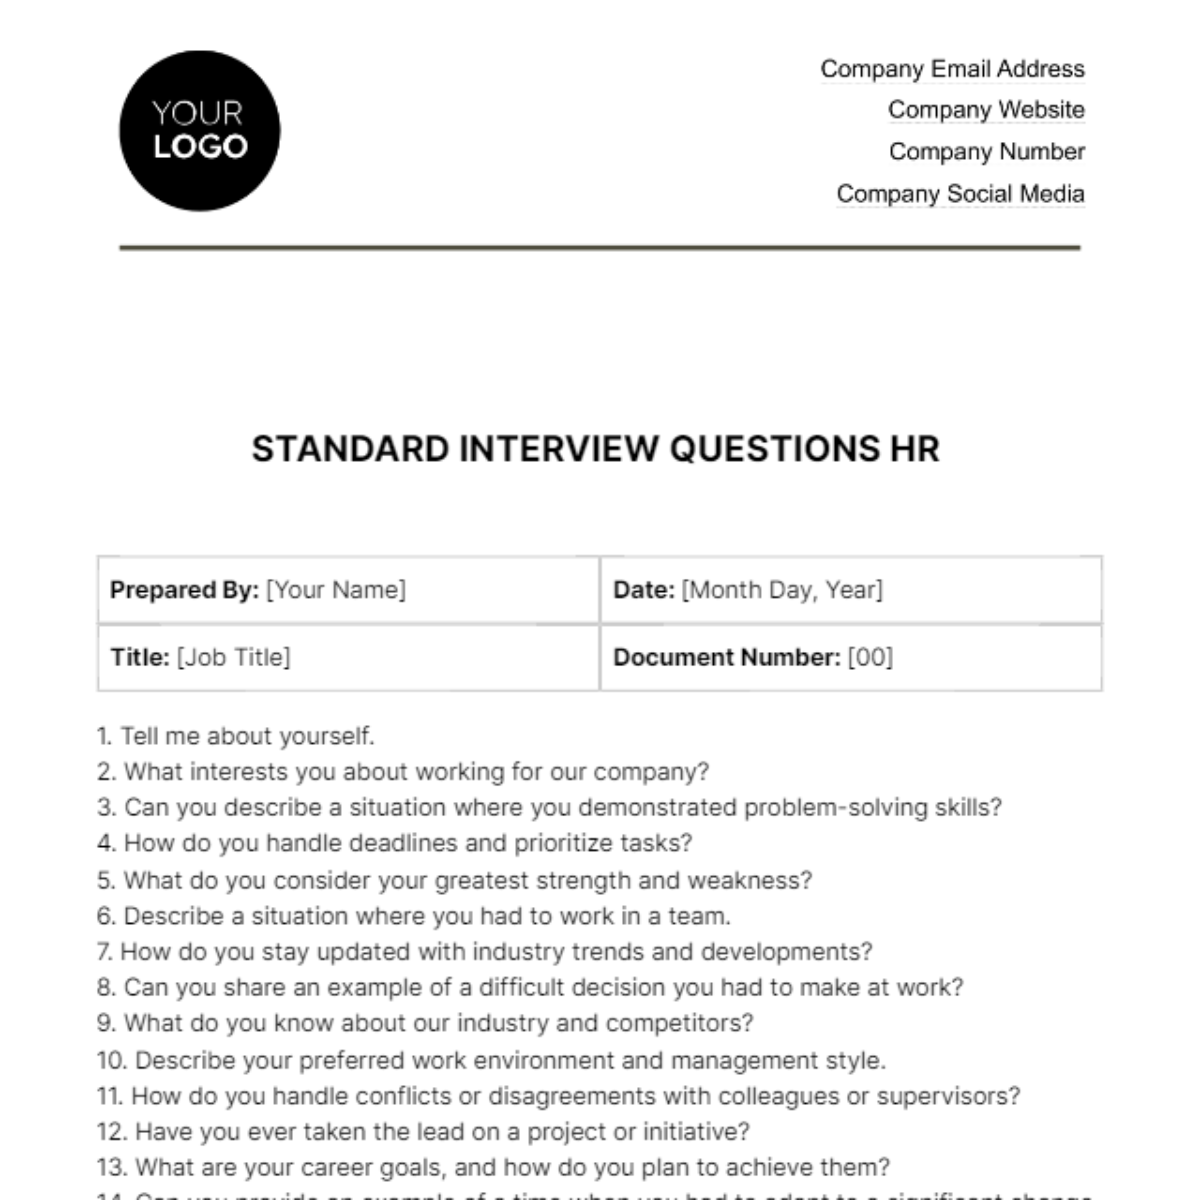 Standard Interview Questions HR Template